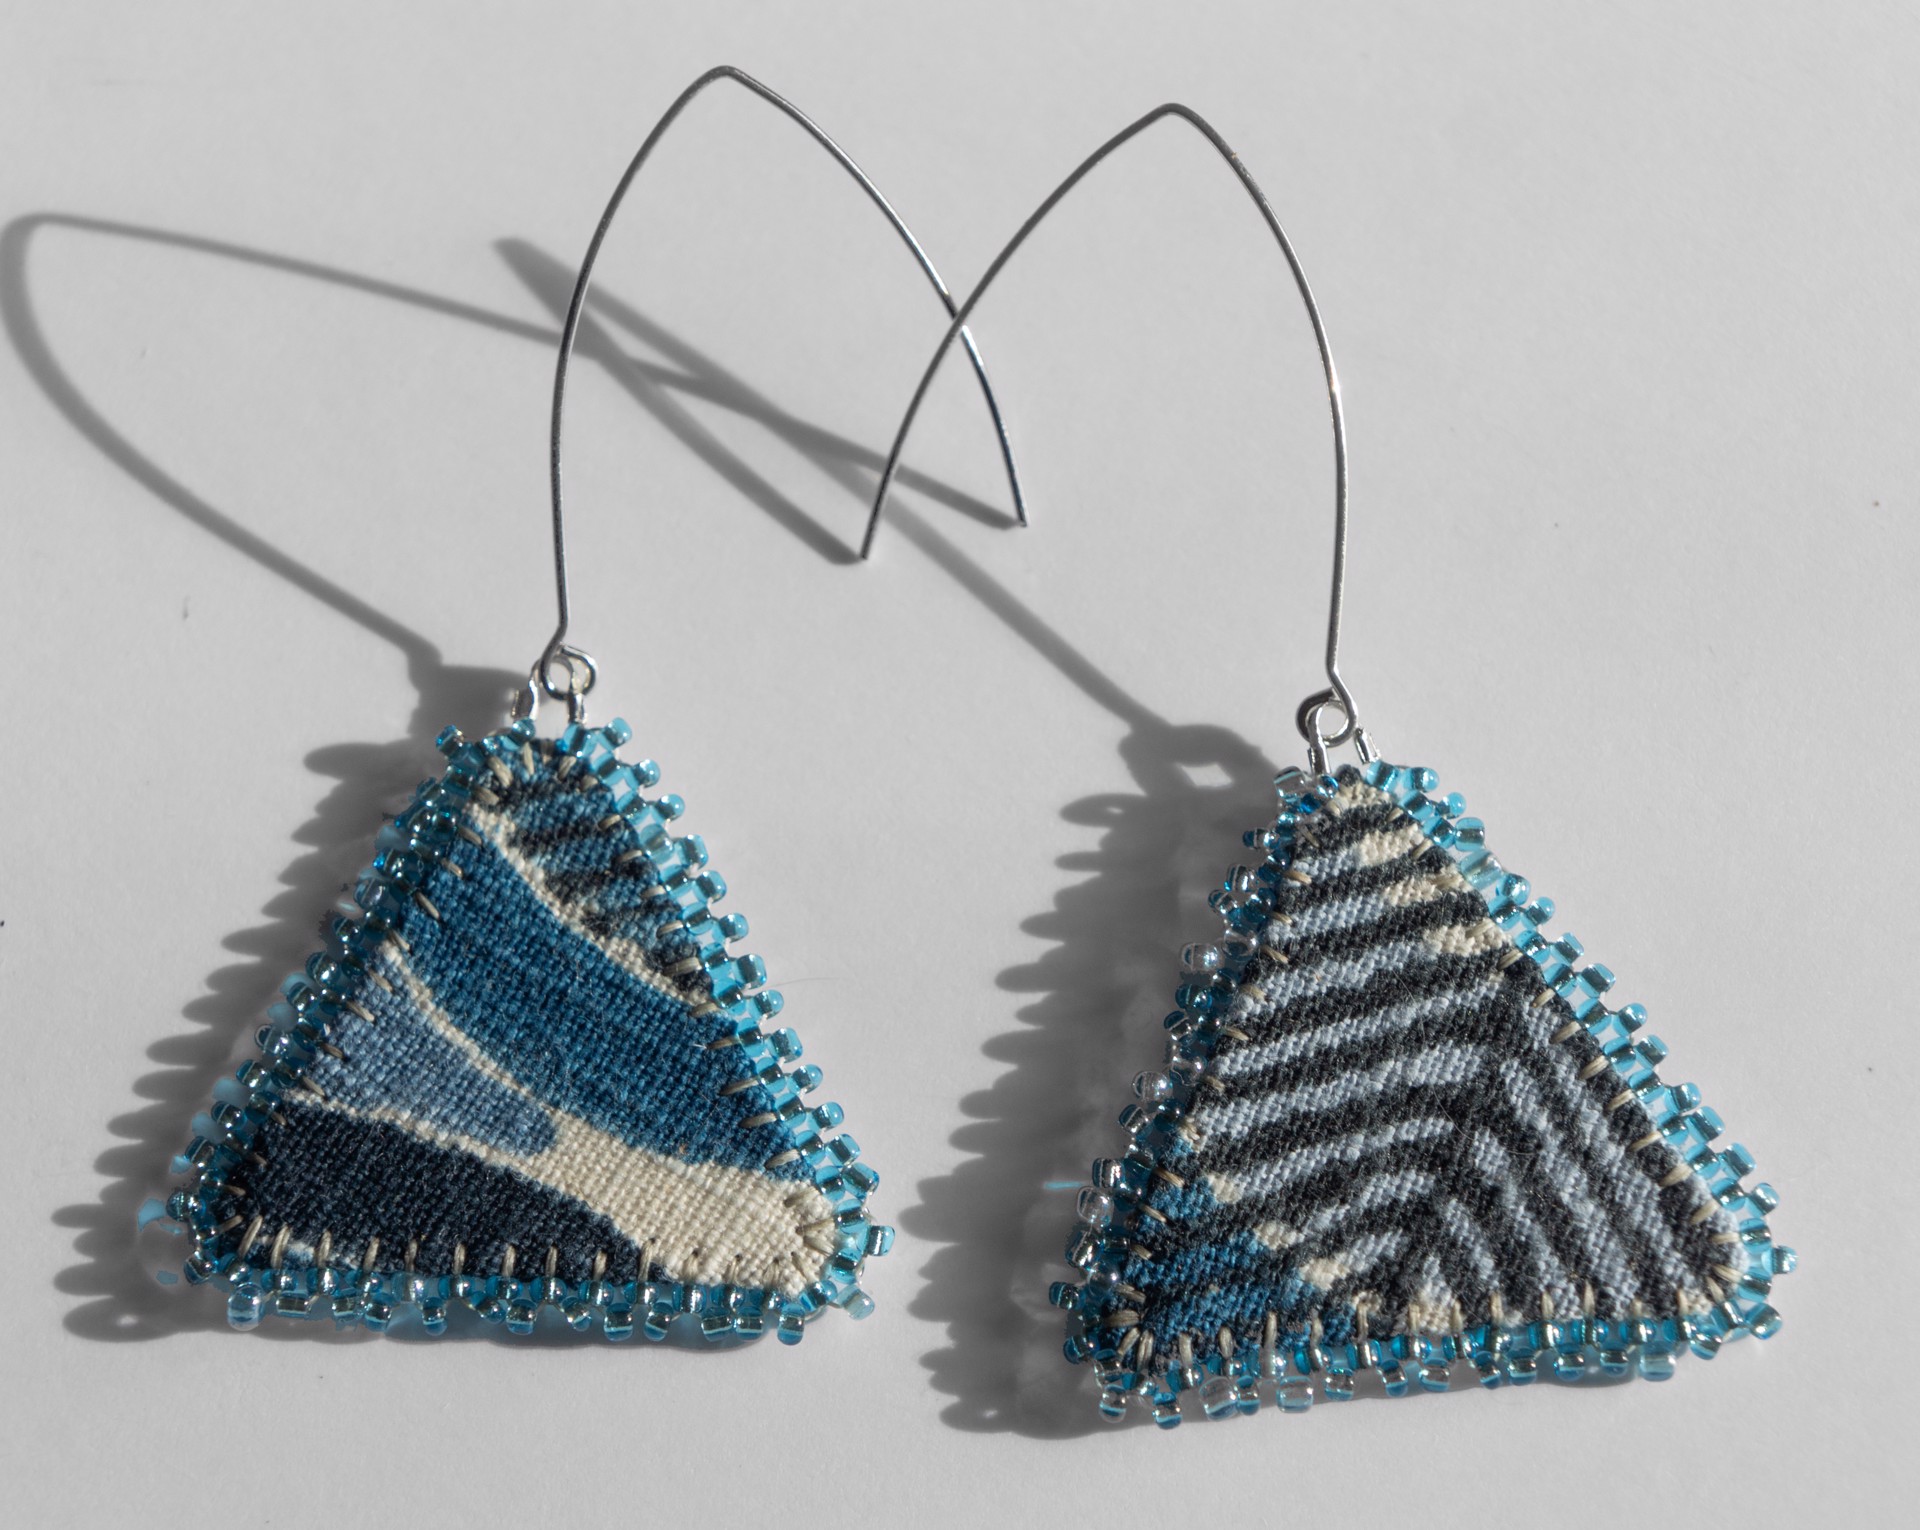 Blue triangle earrings by Hattie Lee Mendoza